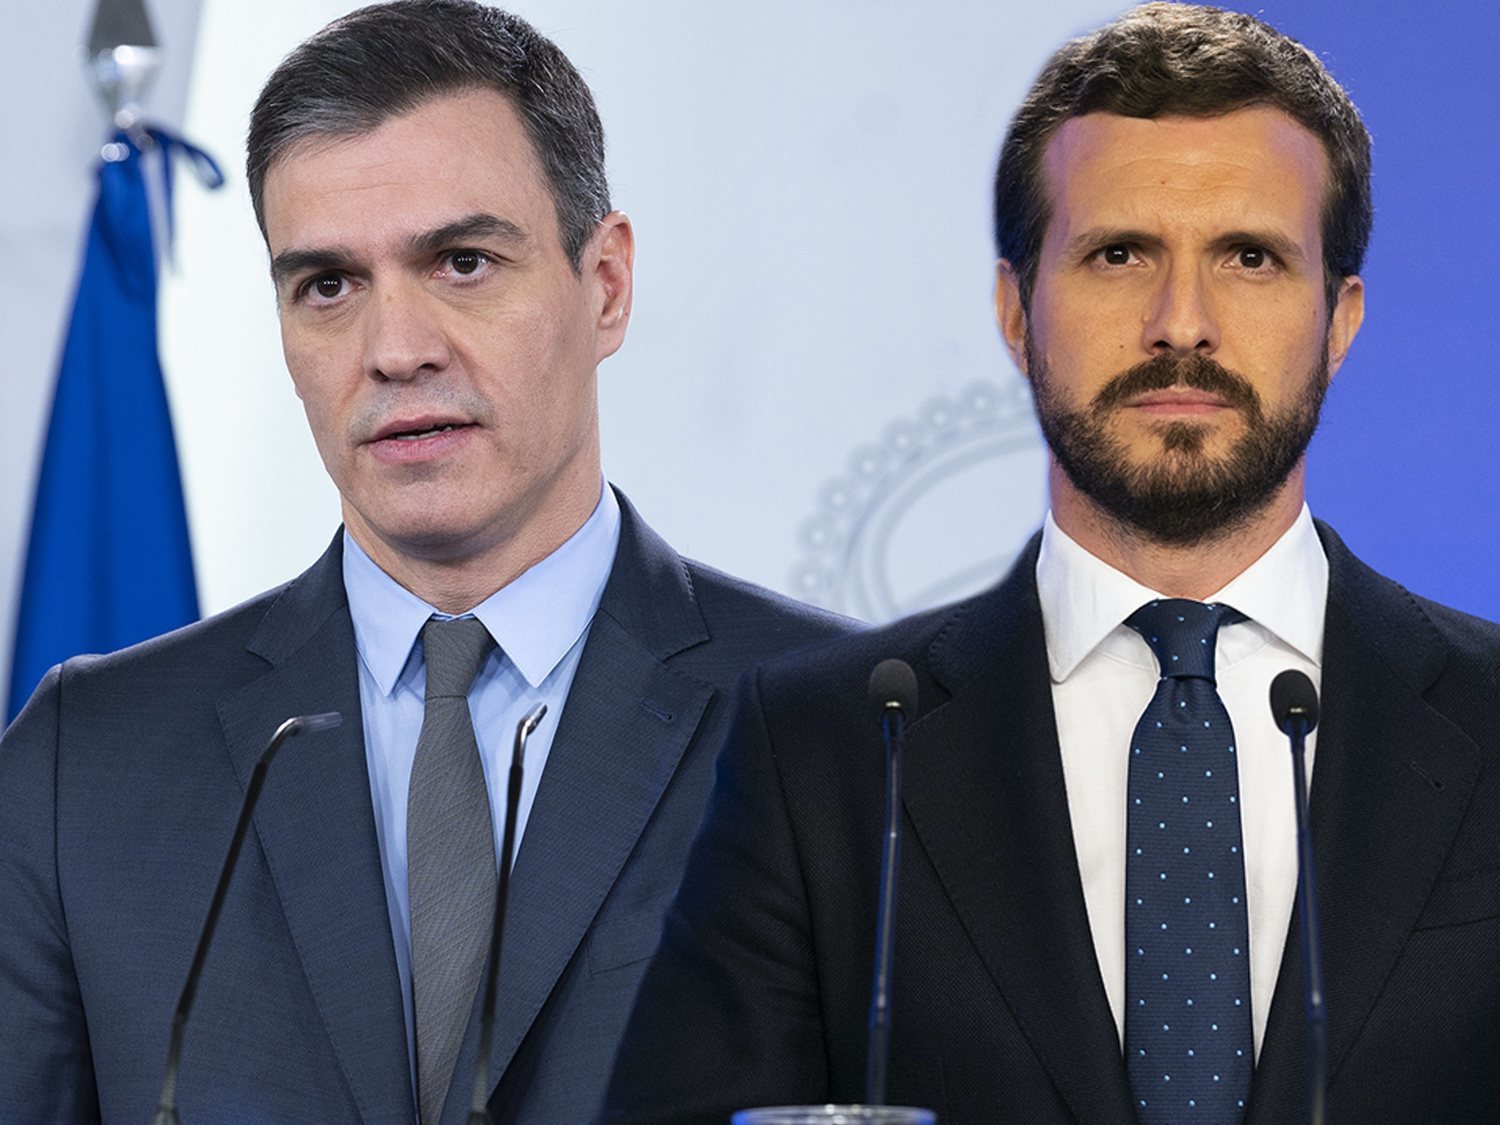 Financial Times critica el papel de la oposición en España en plena crisis del coronavirus